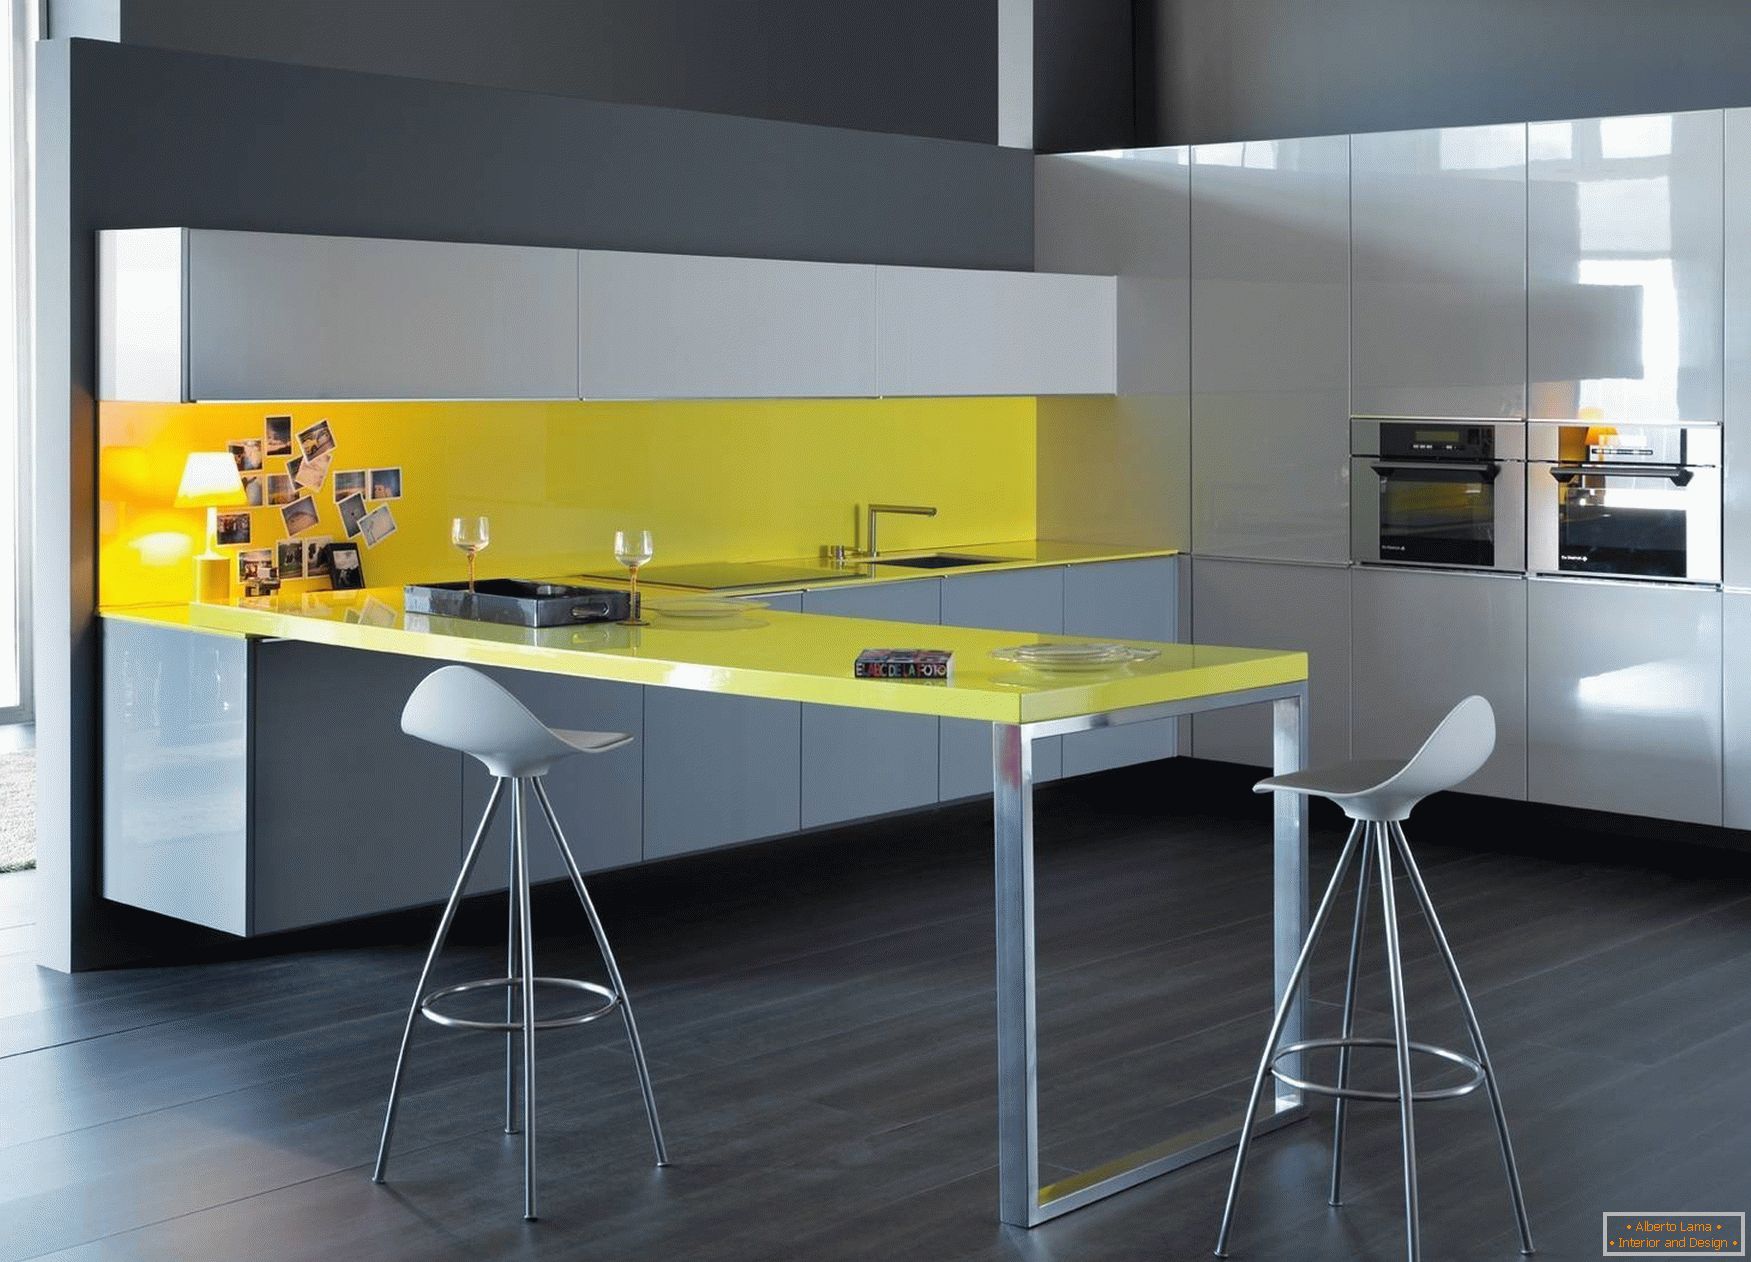 Diseño de cocina amarillo-gris